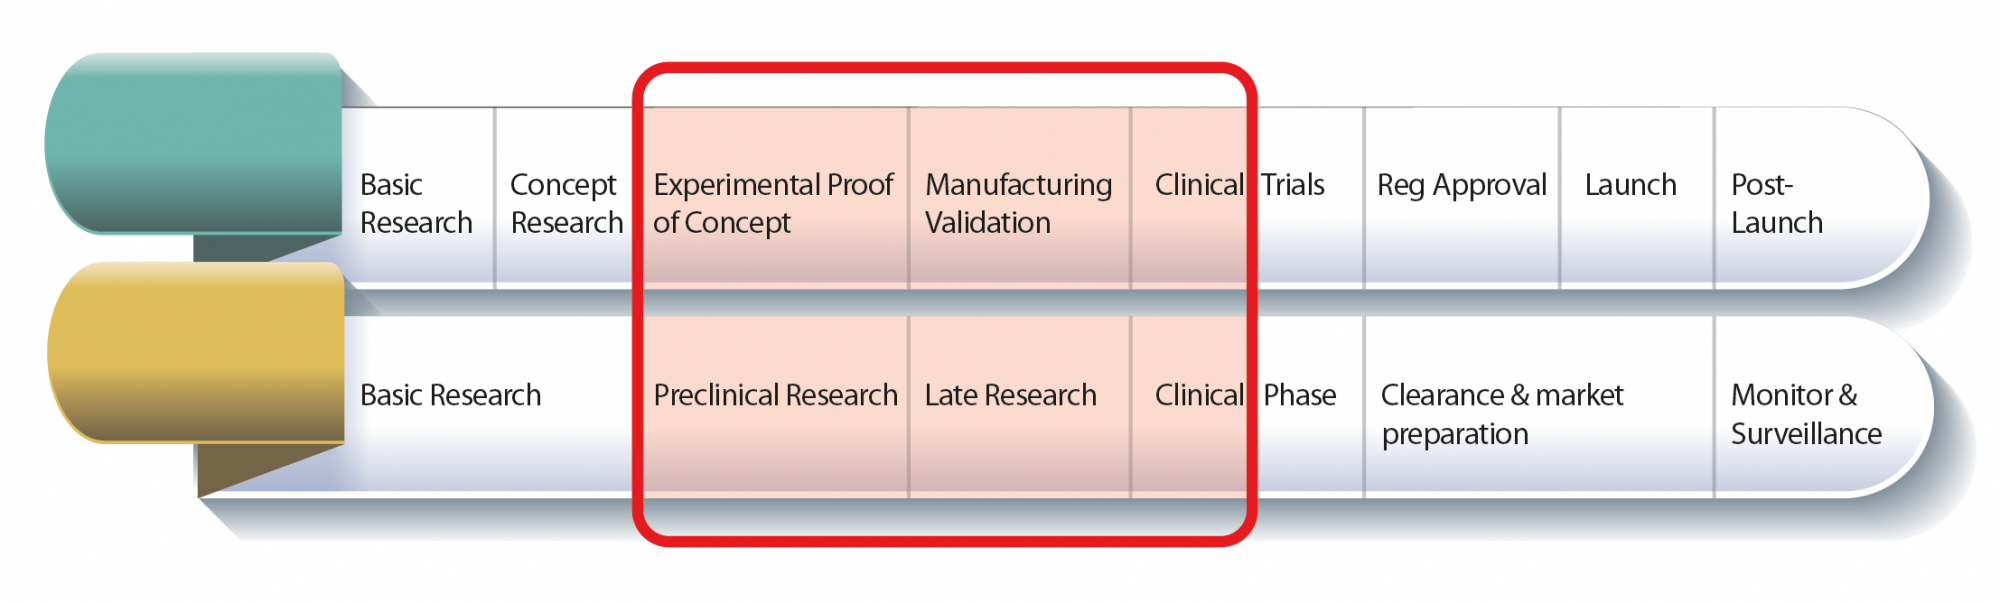 Immagine: l'attività del Laboratorio si situa tra la ricerca preclinica e clinica